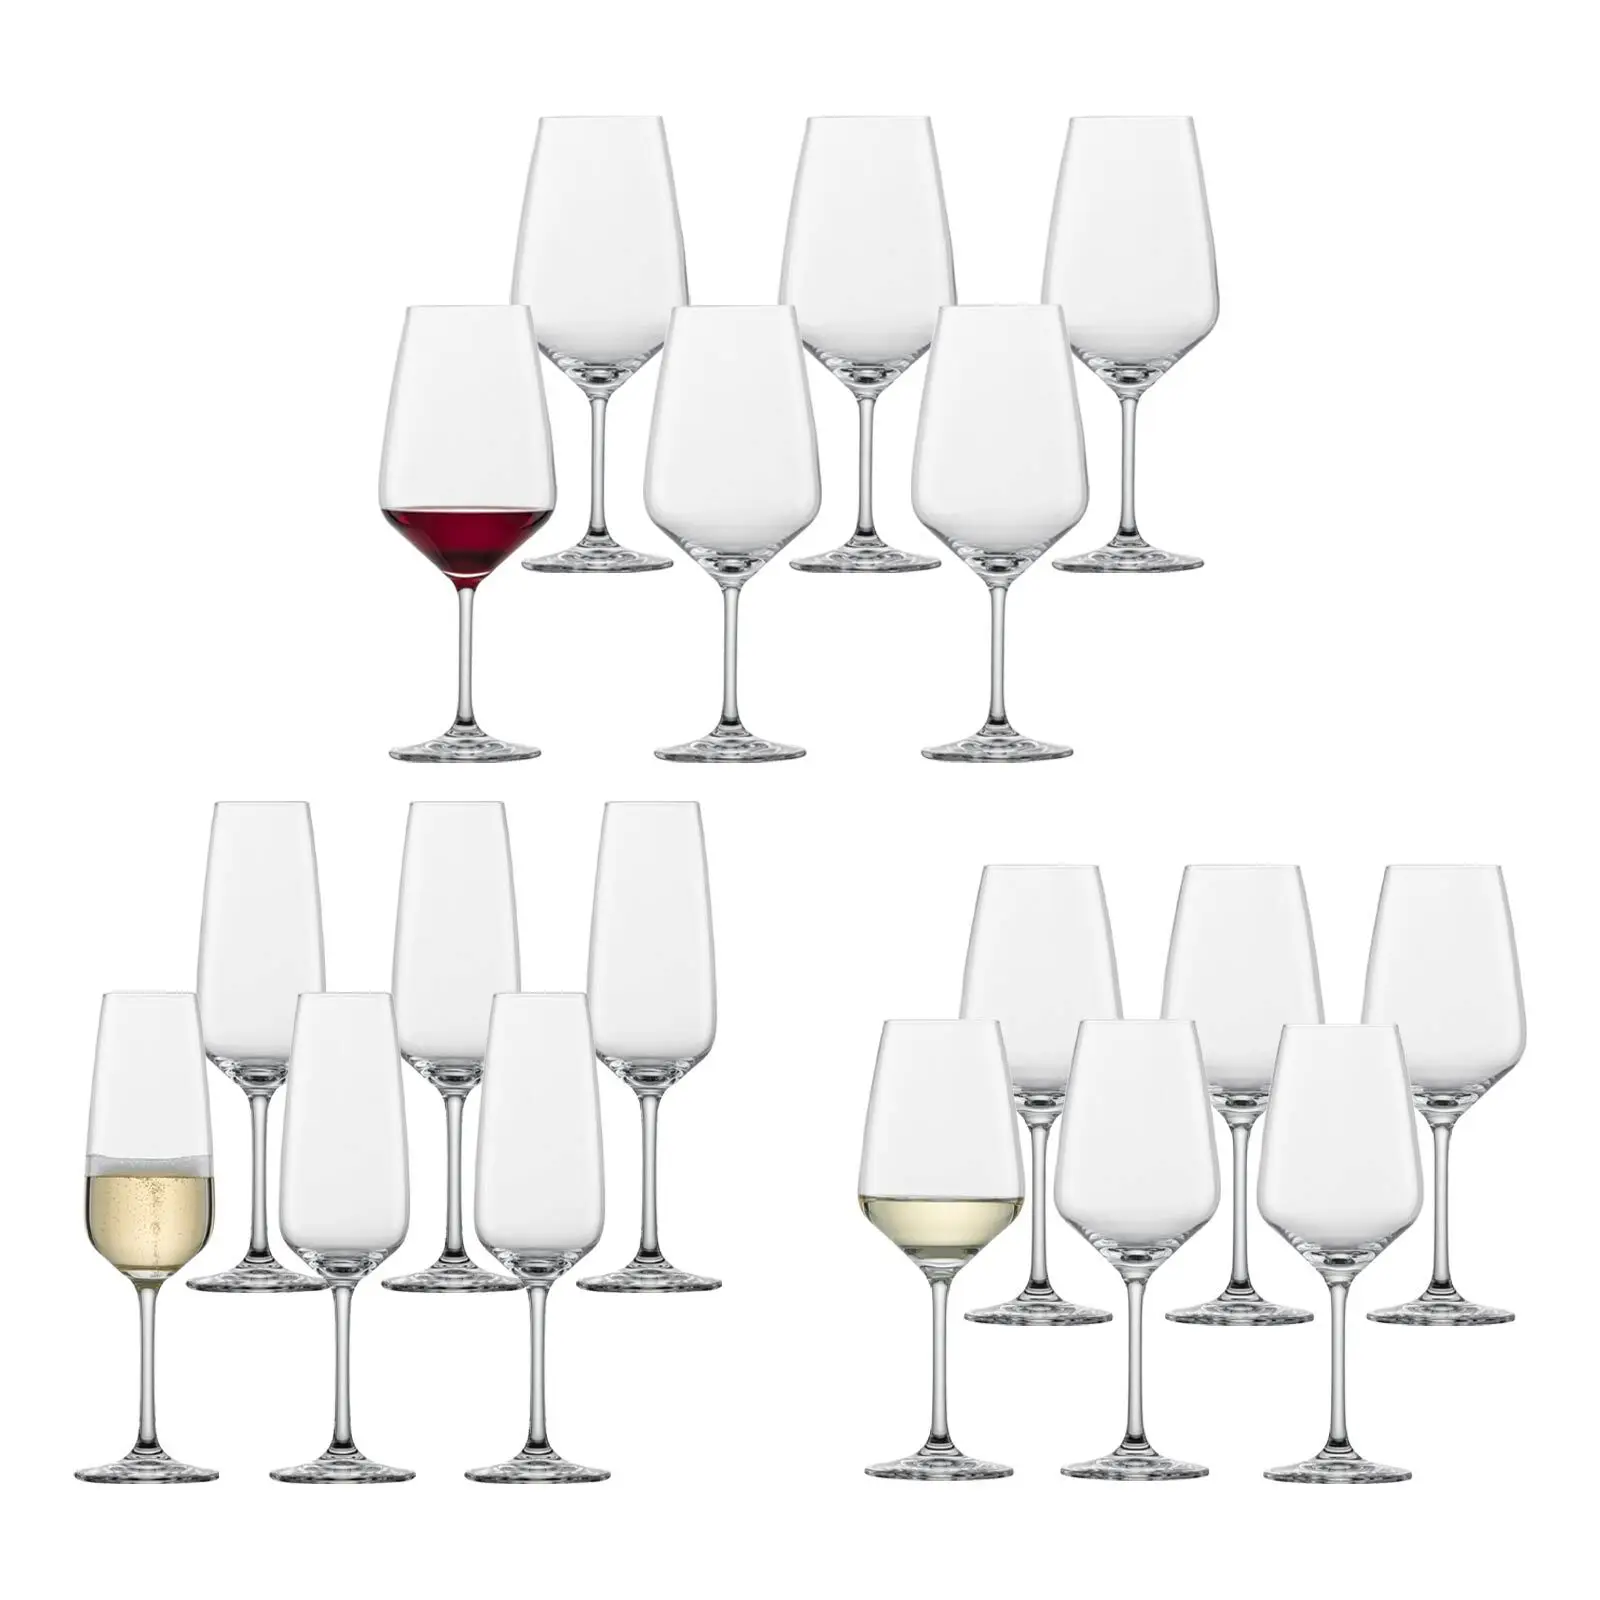 Wein- und Sektgl盲ser Taste 18er Set | Gläser-Sets